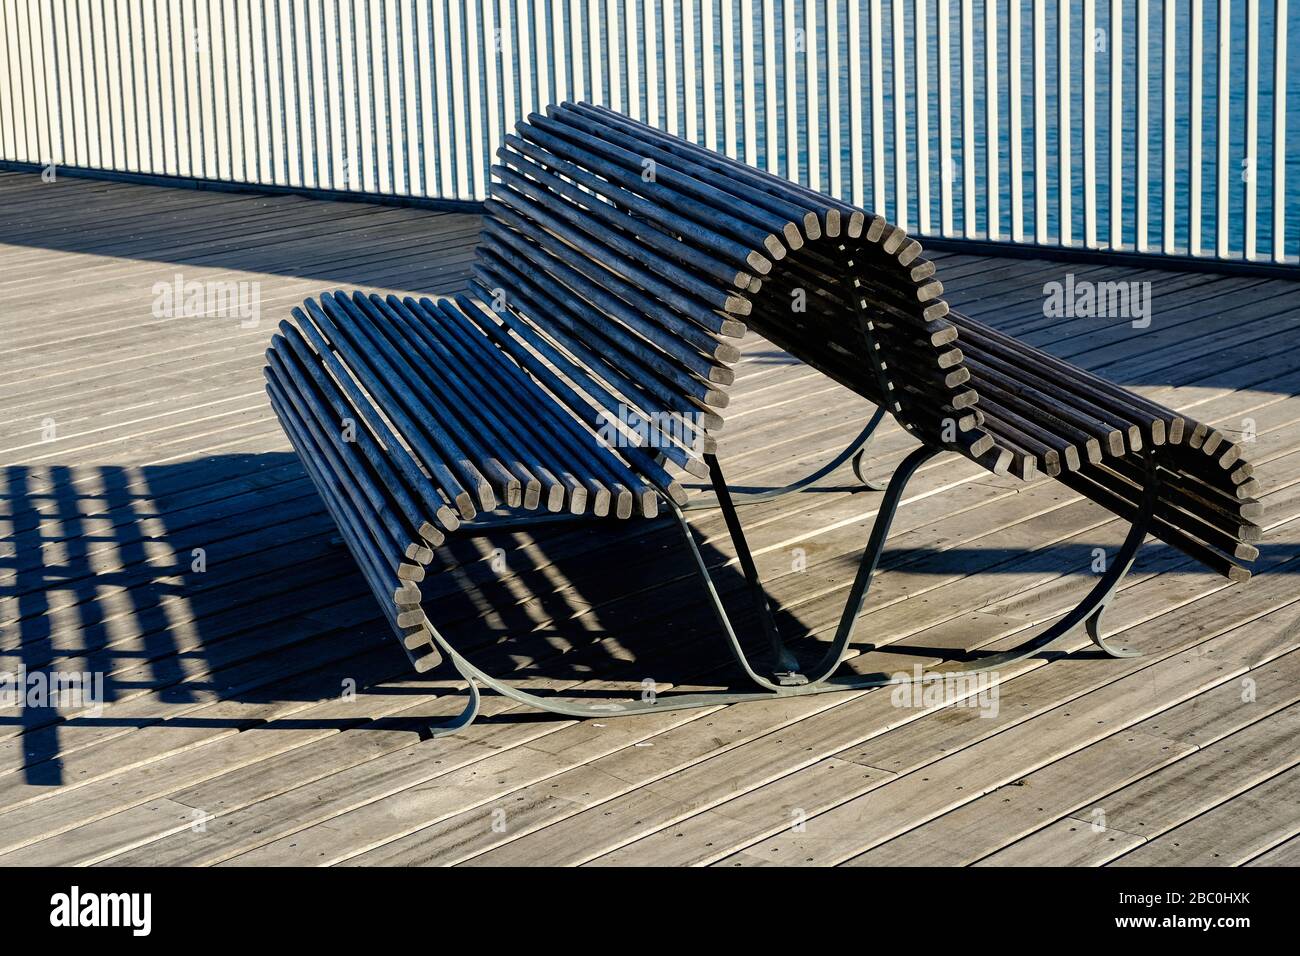 Panchina per i visitatori per rilassarsi e godersi la vista sul Molo di Hastings, East Sussex, Regno Unito Foto Stock